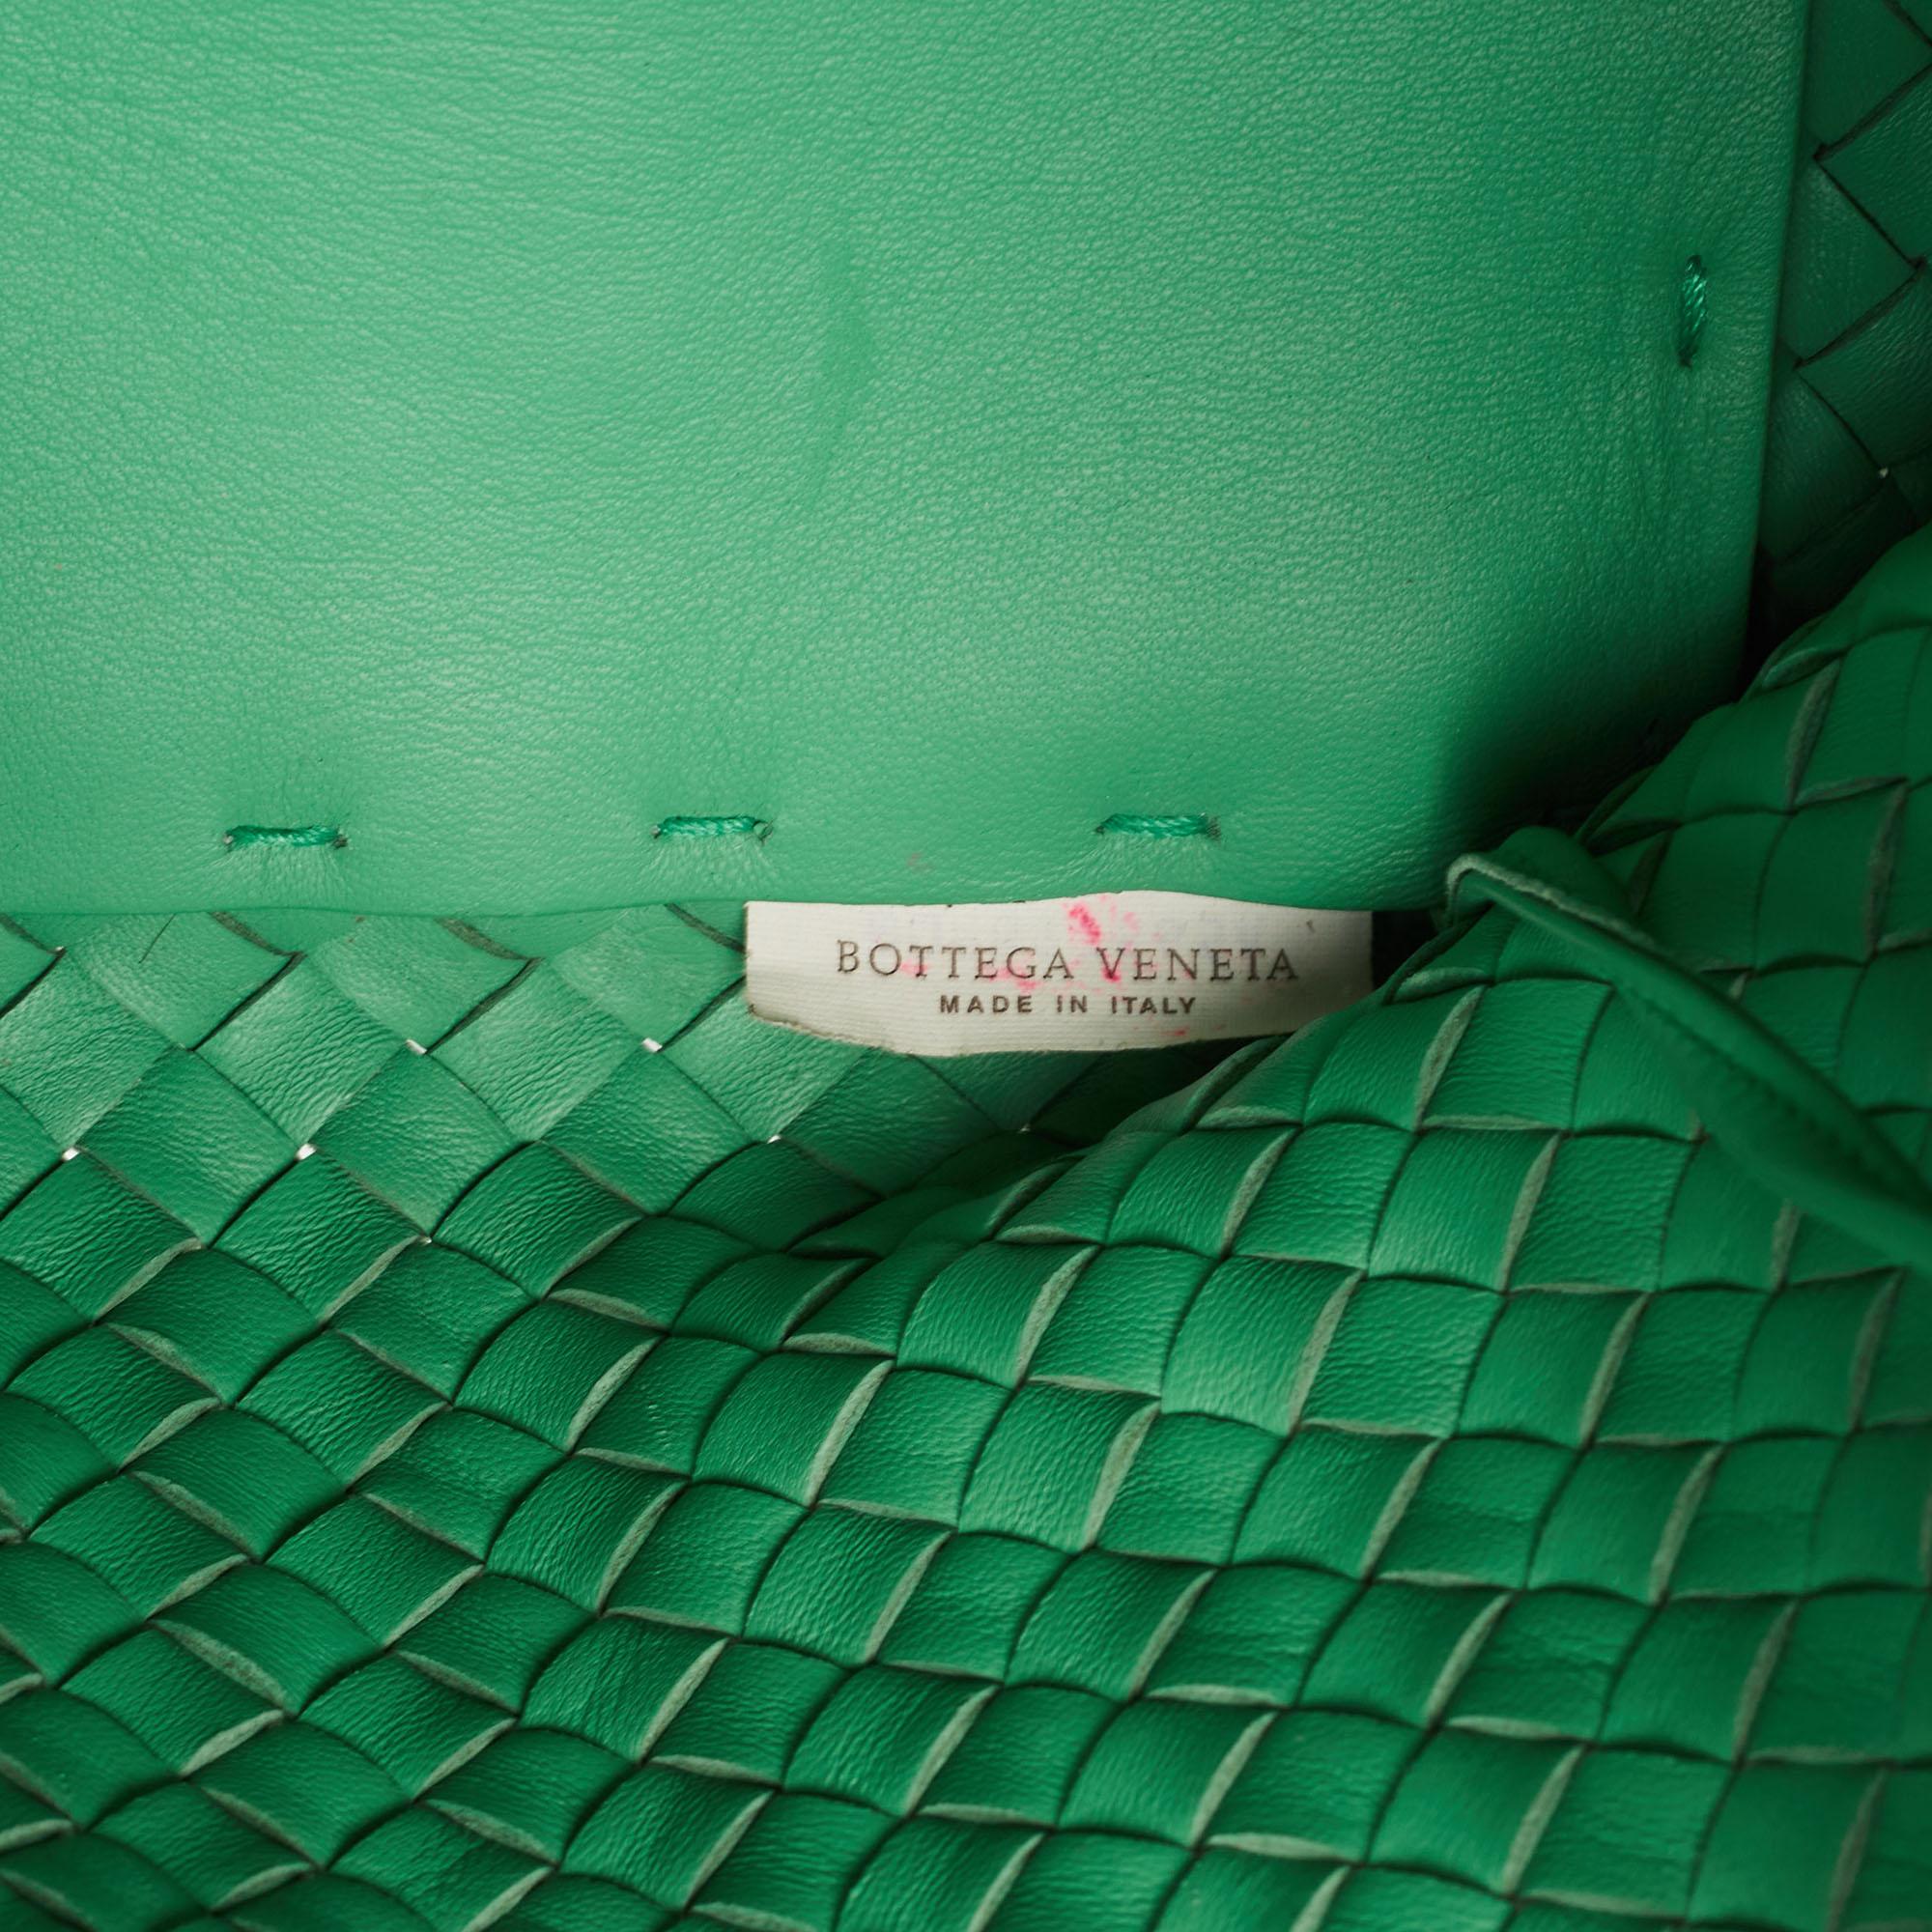 Bottega Veneta Green Intrecciato Leather  Limited Edition 0147/1000 Cabat Tote For Sale 6